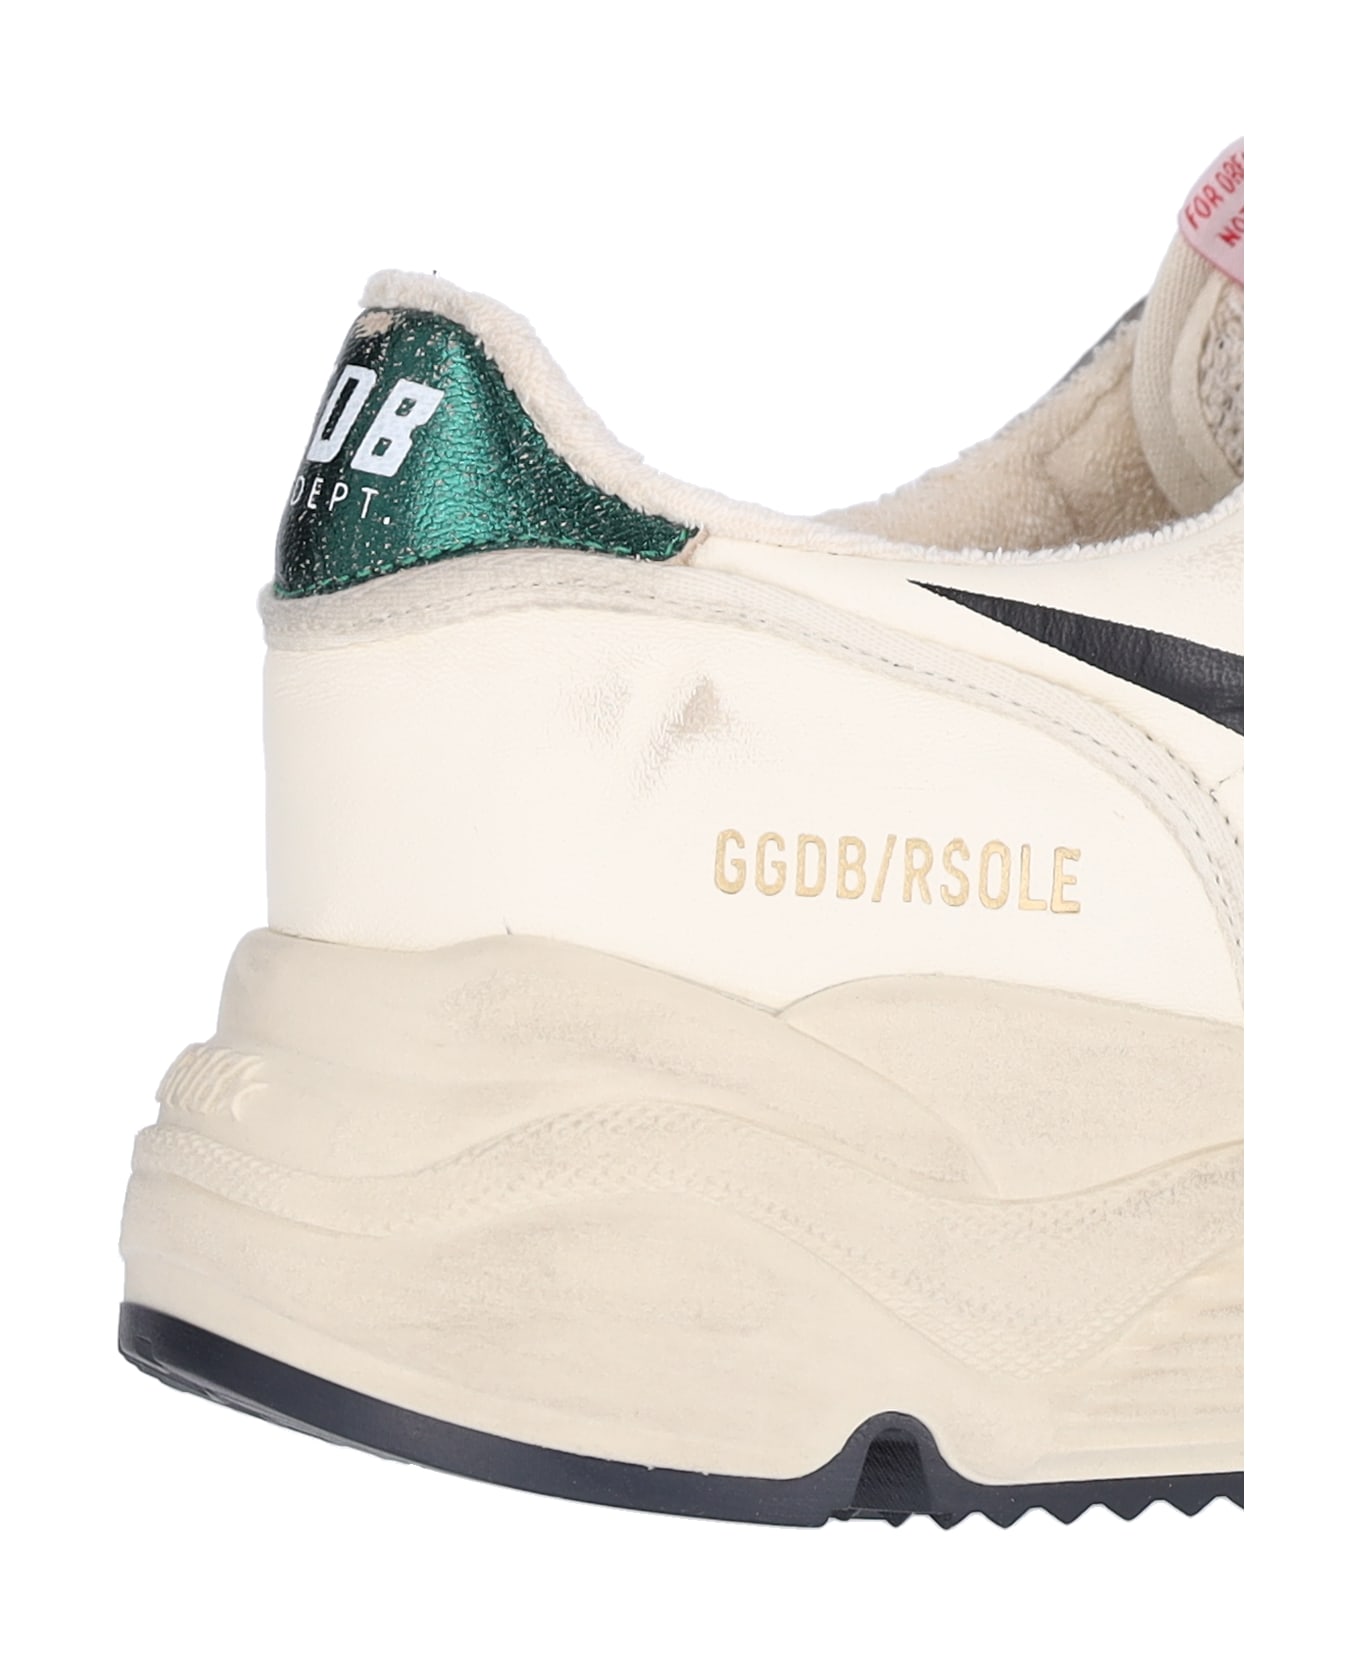 Golden Goose Running Sneakers - White/Black/Emerald スニーカー